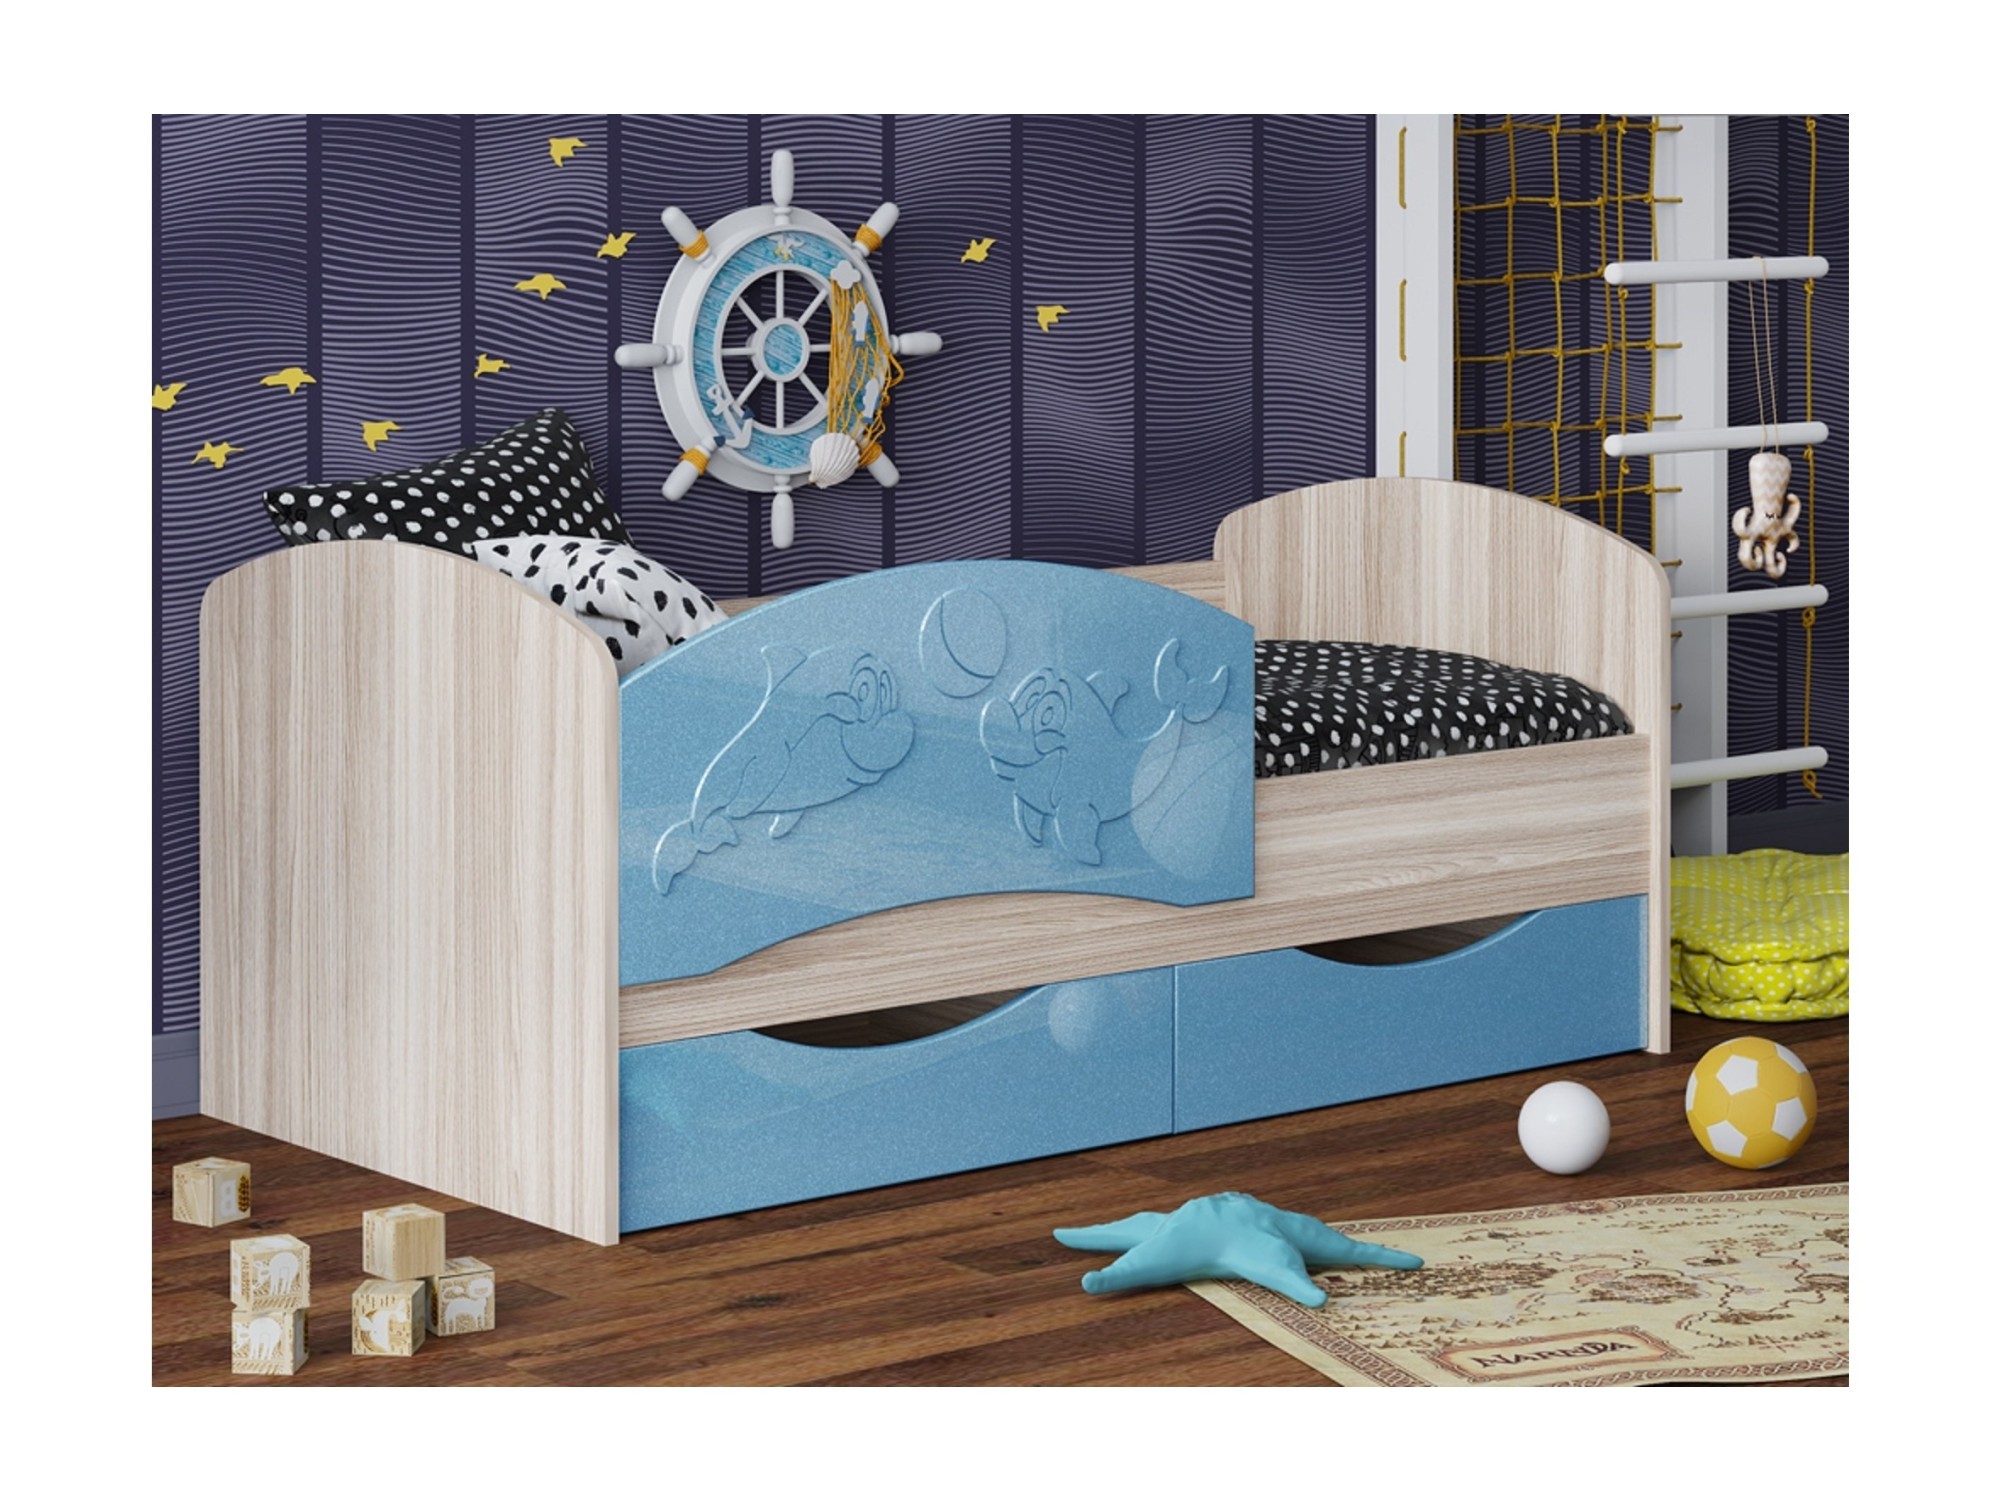 Детская кровать Дельфин-3 МДФ голубой, 80х160 МДФ, ЛДСП кровать рико 80х160 дуб девонширсикй аква голубой бежевый лдсп